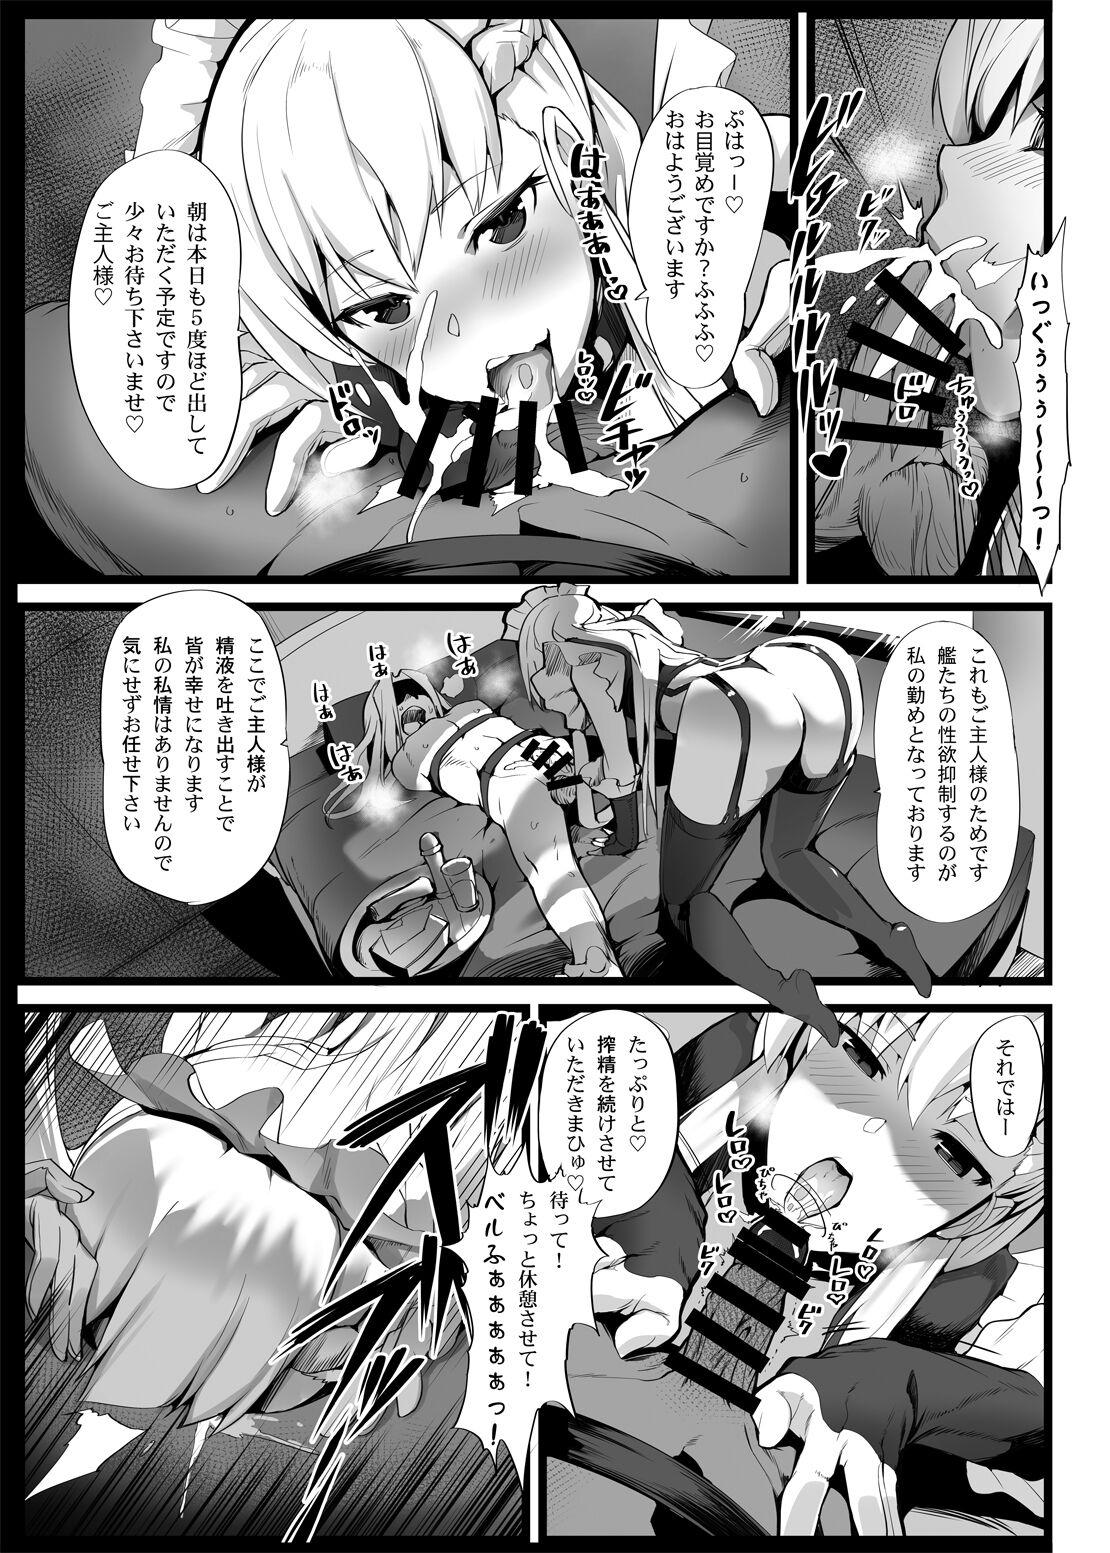 Alone Mukakin Shirei ni Yubiwa o Kawaseru Saigo no Houhou 2 - Azur lane Jizz - Page 4